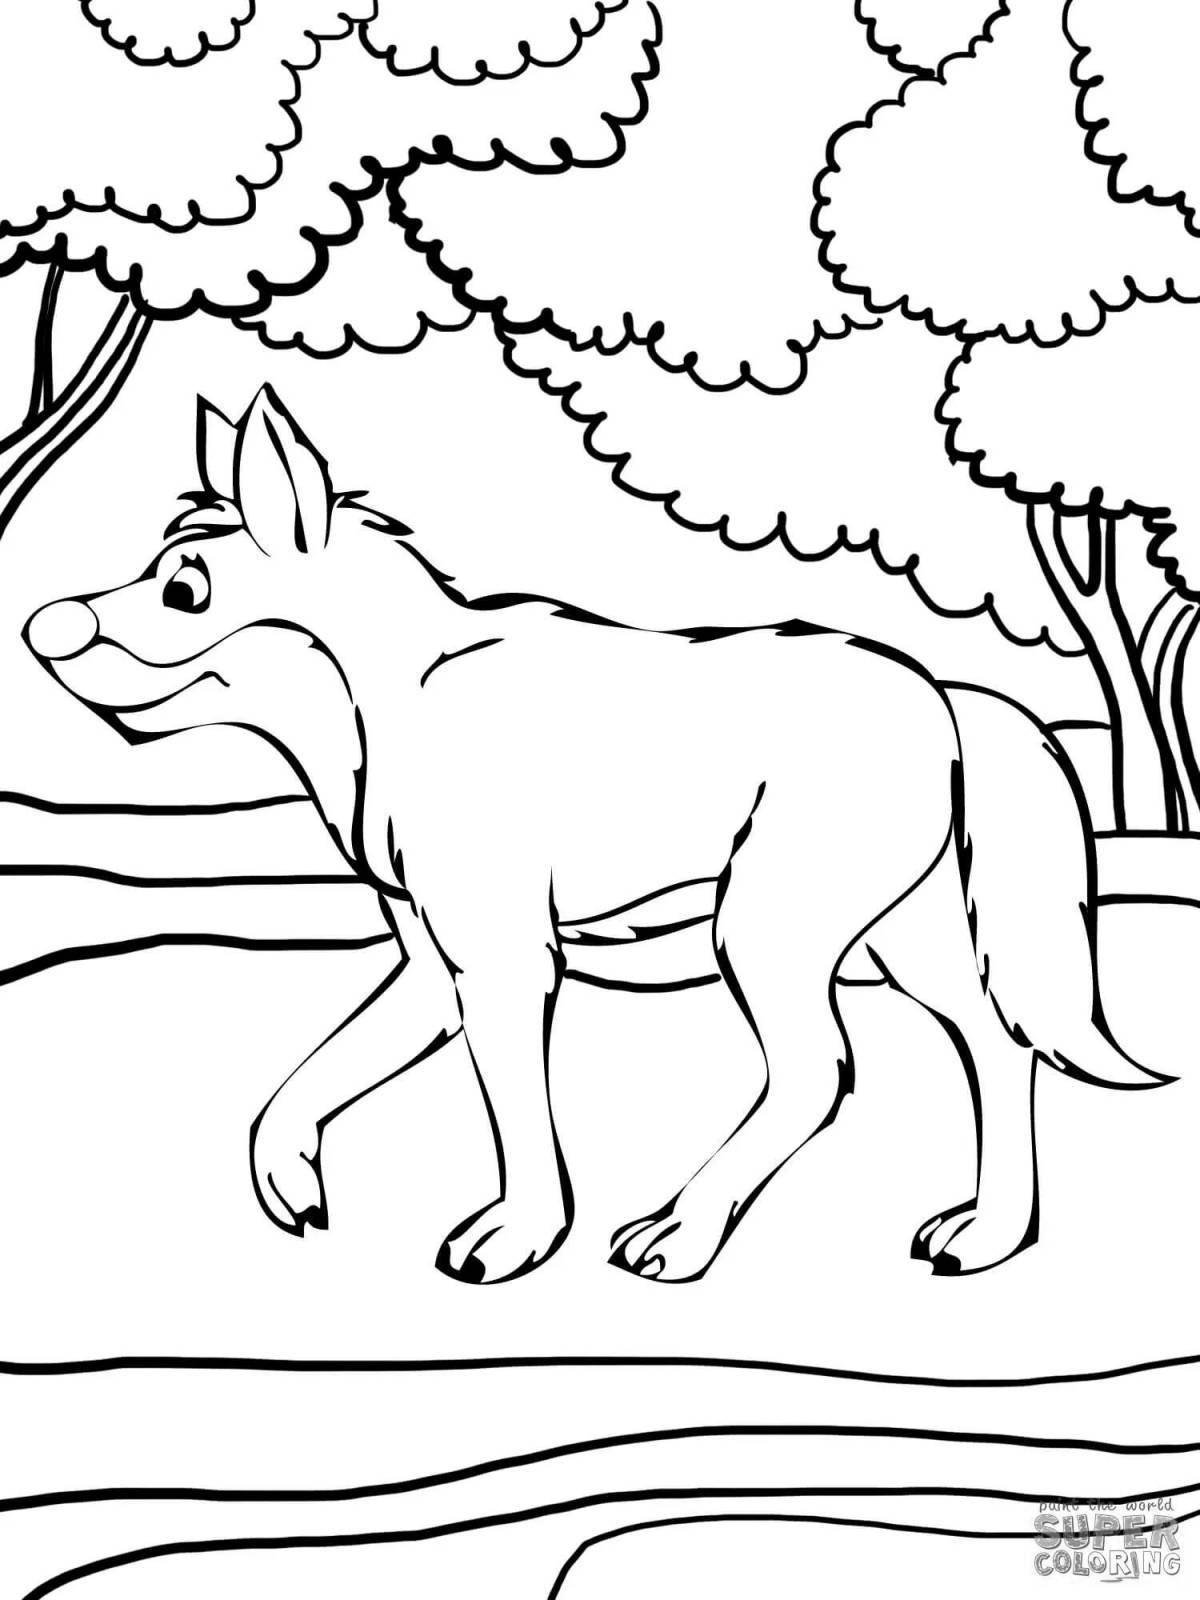 Вой волка в зимнем лесу Раскраска (картина) по номерам Dimensions DMS-91004